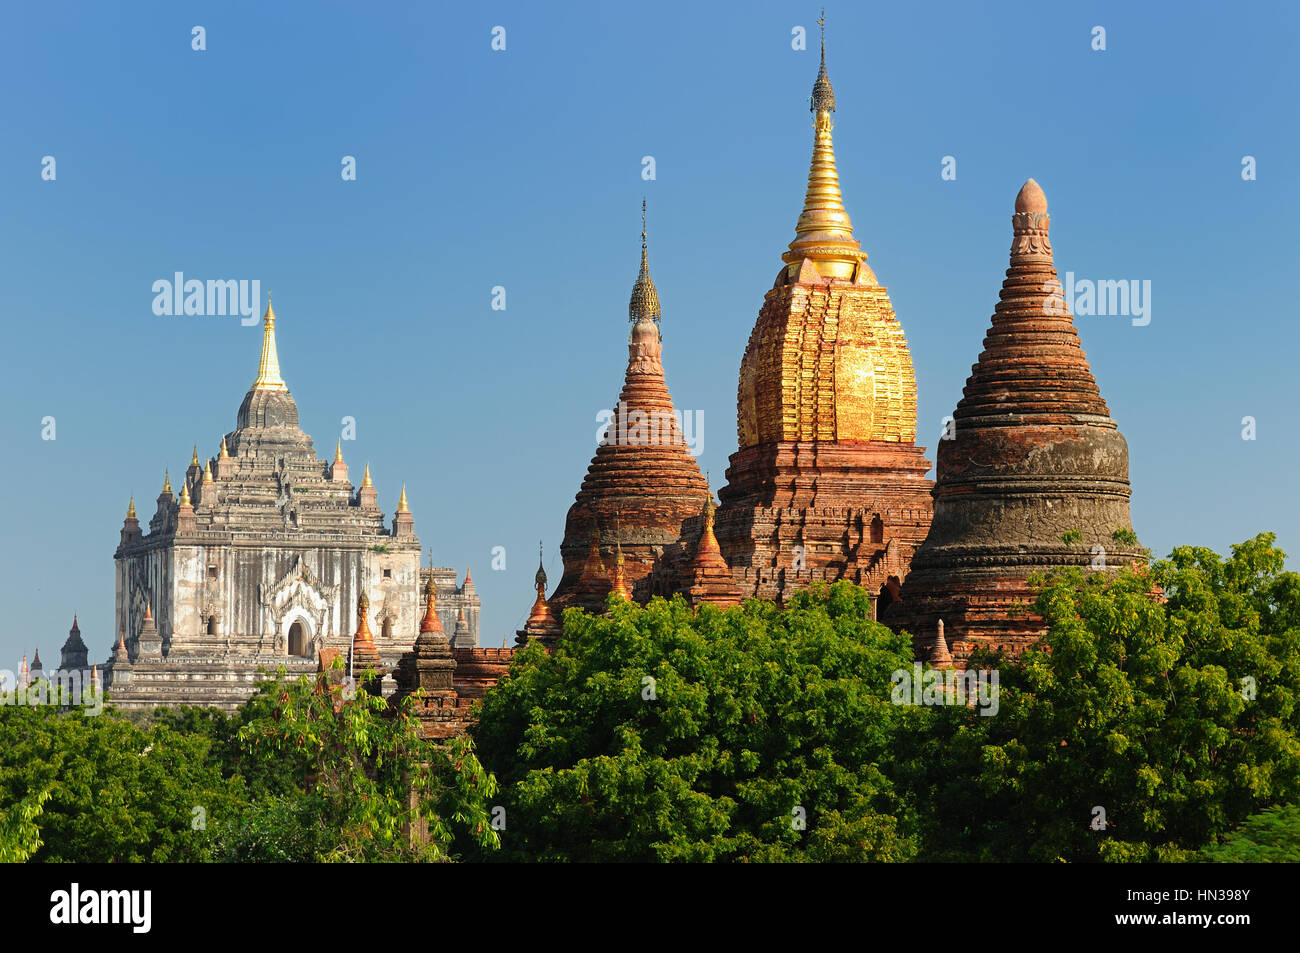 Myanmar (Birmanie), Bagan, Thatbyinny Pahto Temple - Bagan temple est construit la plus haute de deux étages en forme de couleur blanche. Construit en 1144 par Alaungsithu. Banque D'Images